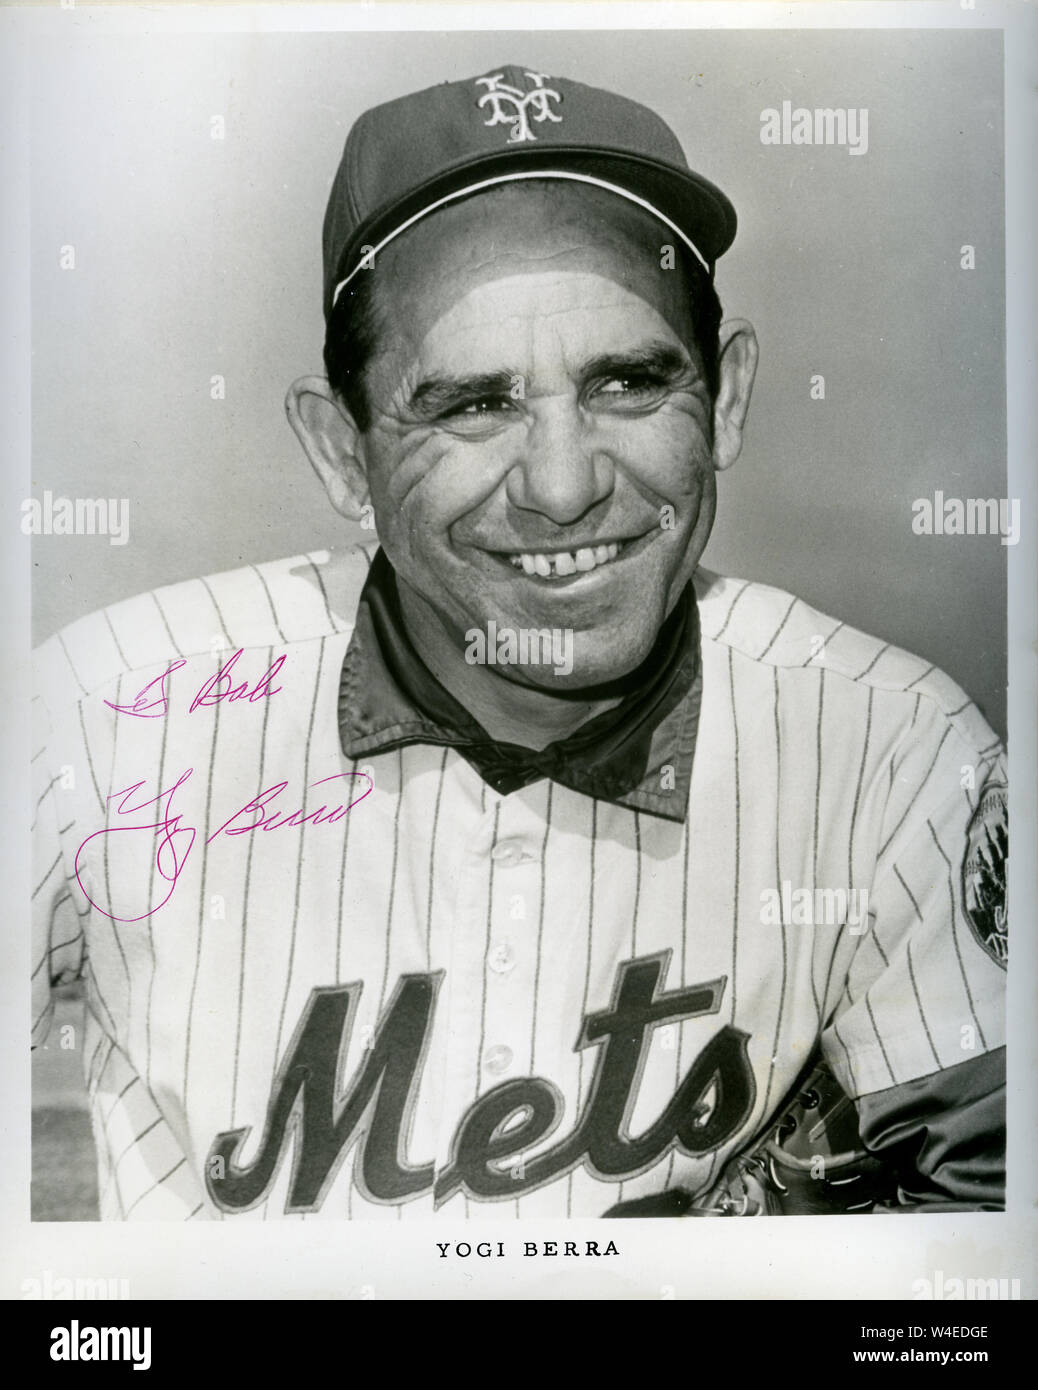 Hall of Fame joueur de baseball Yogi Berra dans photo autographiée comme entraîneur avec les Mets de New York en 1969. Banque D'Images